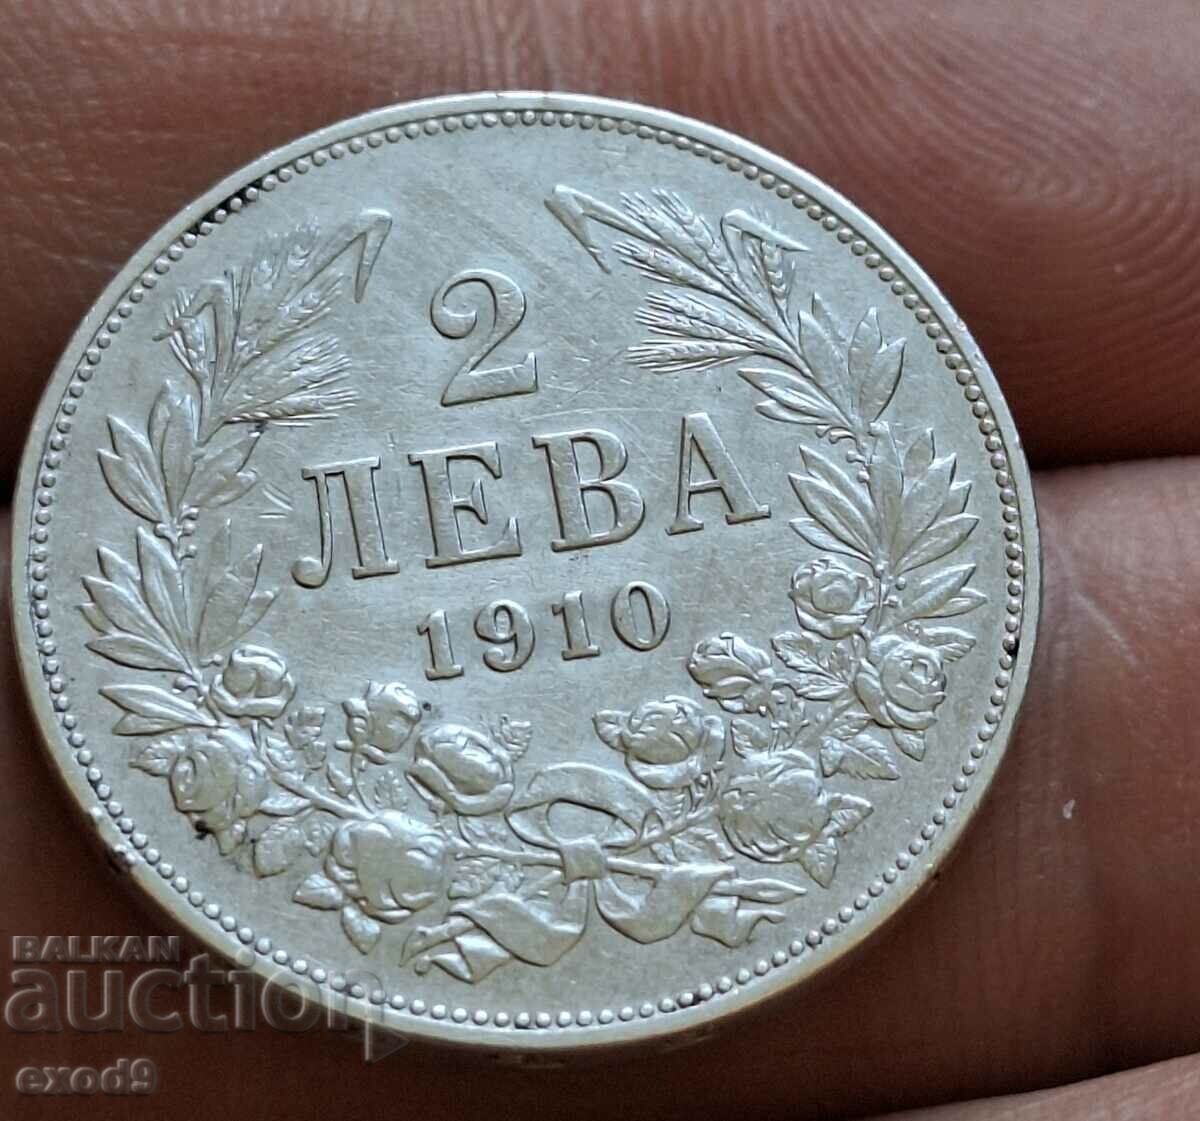 Argint, monedă 2 leva 1910